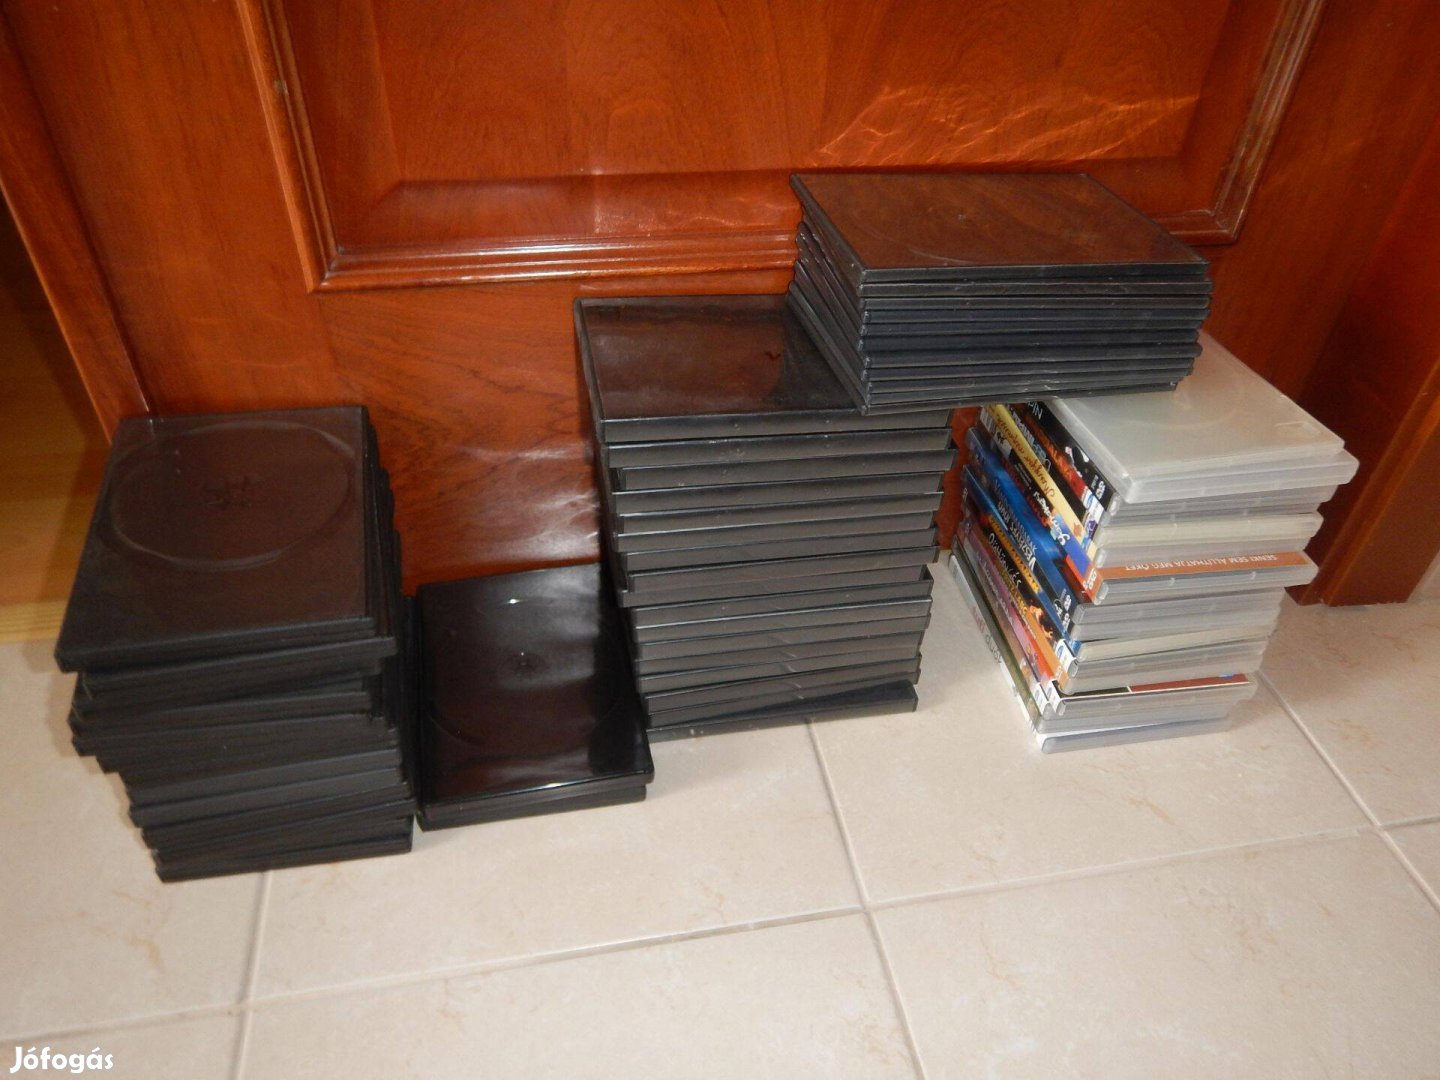 Eladó dvd tokok különvféle 1-6 dvd számára, 60-70 db